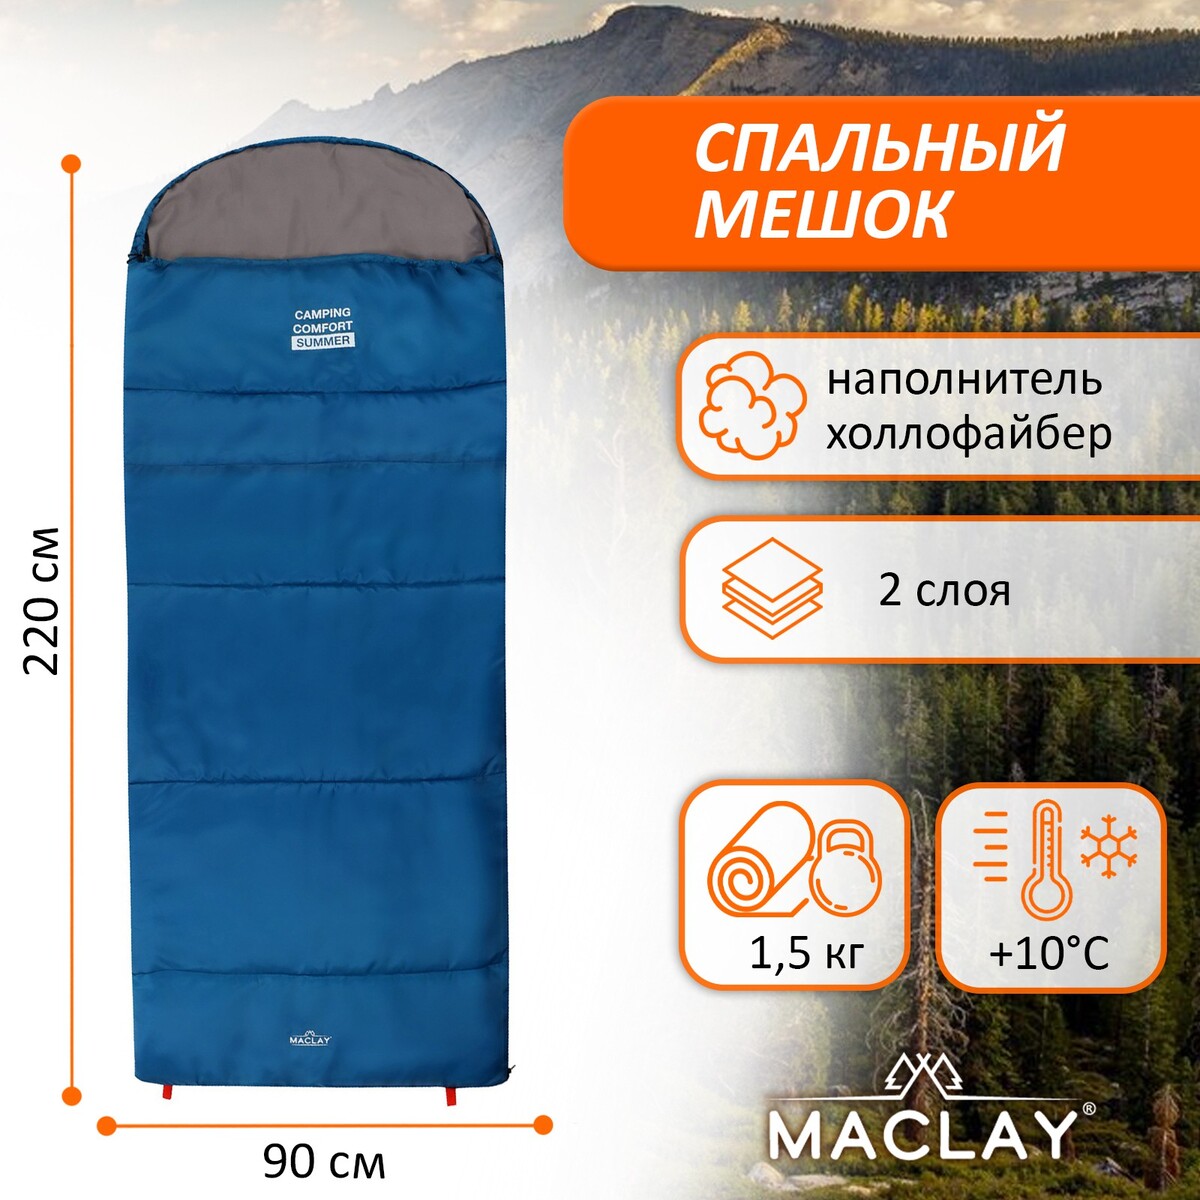 Спальный мешок maclay camping comfort summer, 2 слоя, правый, с подголовником, 220х90 см, +10/+25°с горшок summer infant